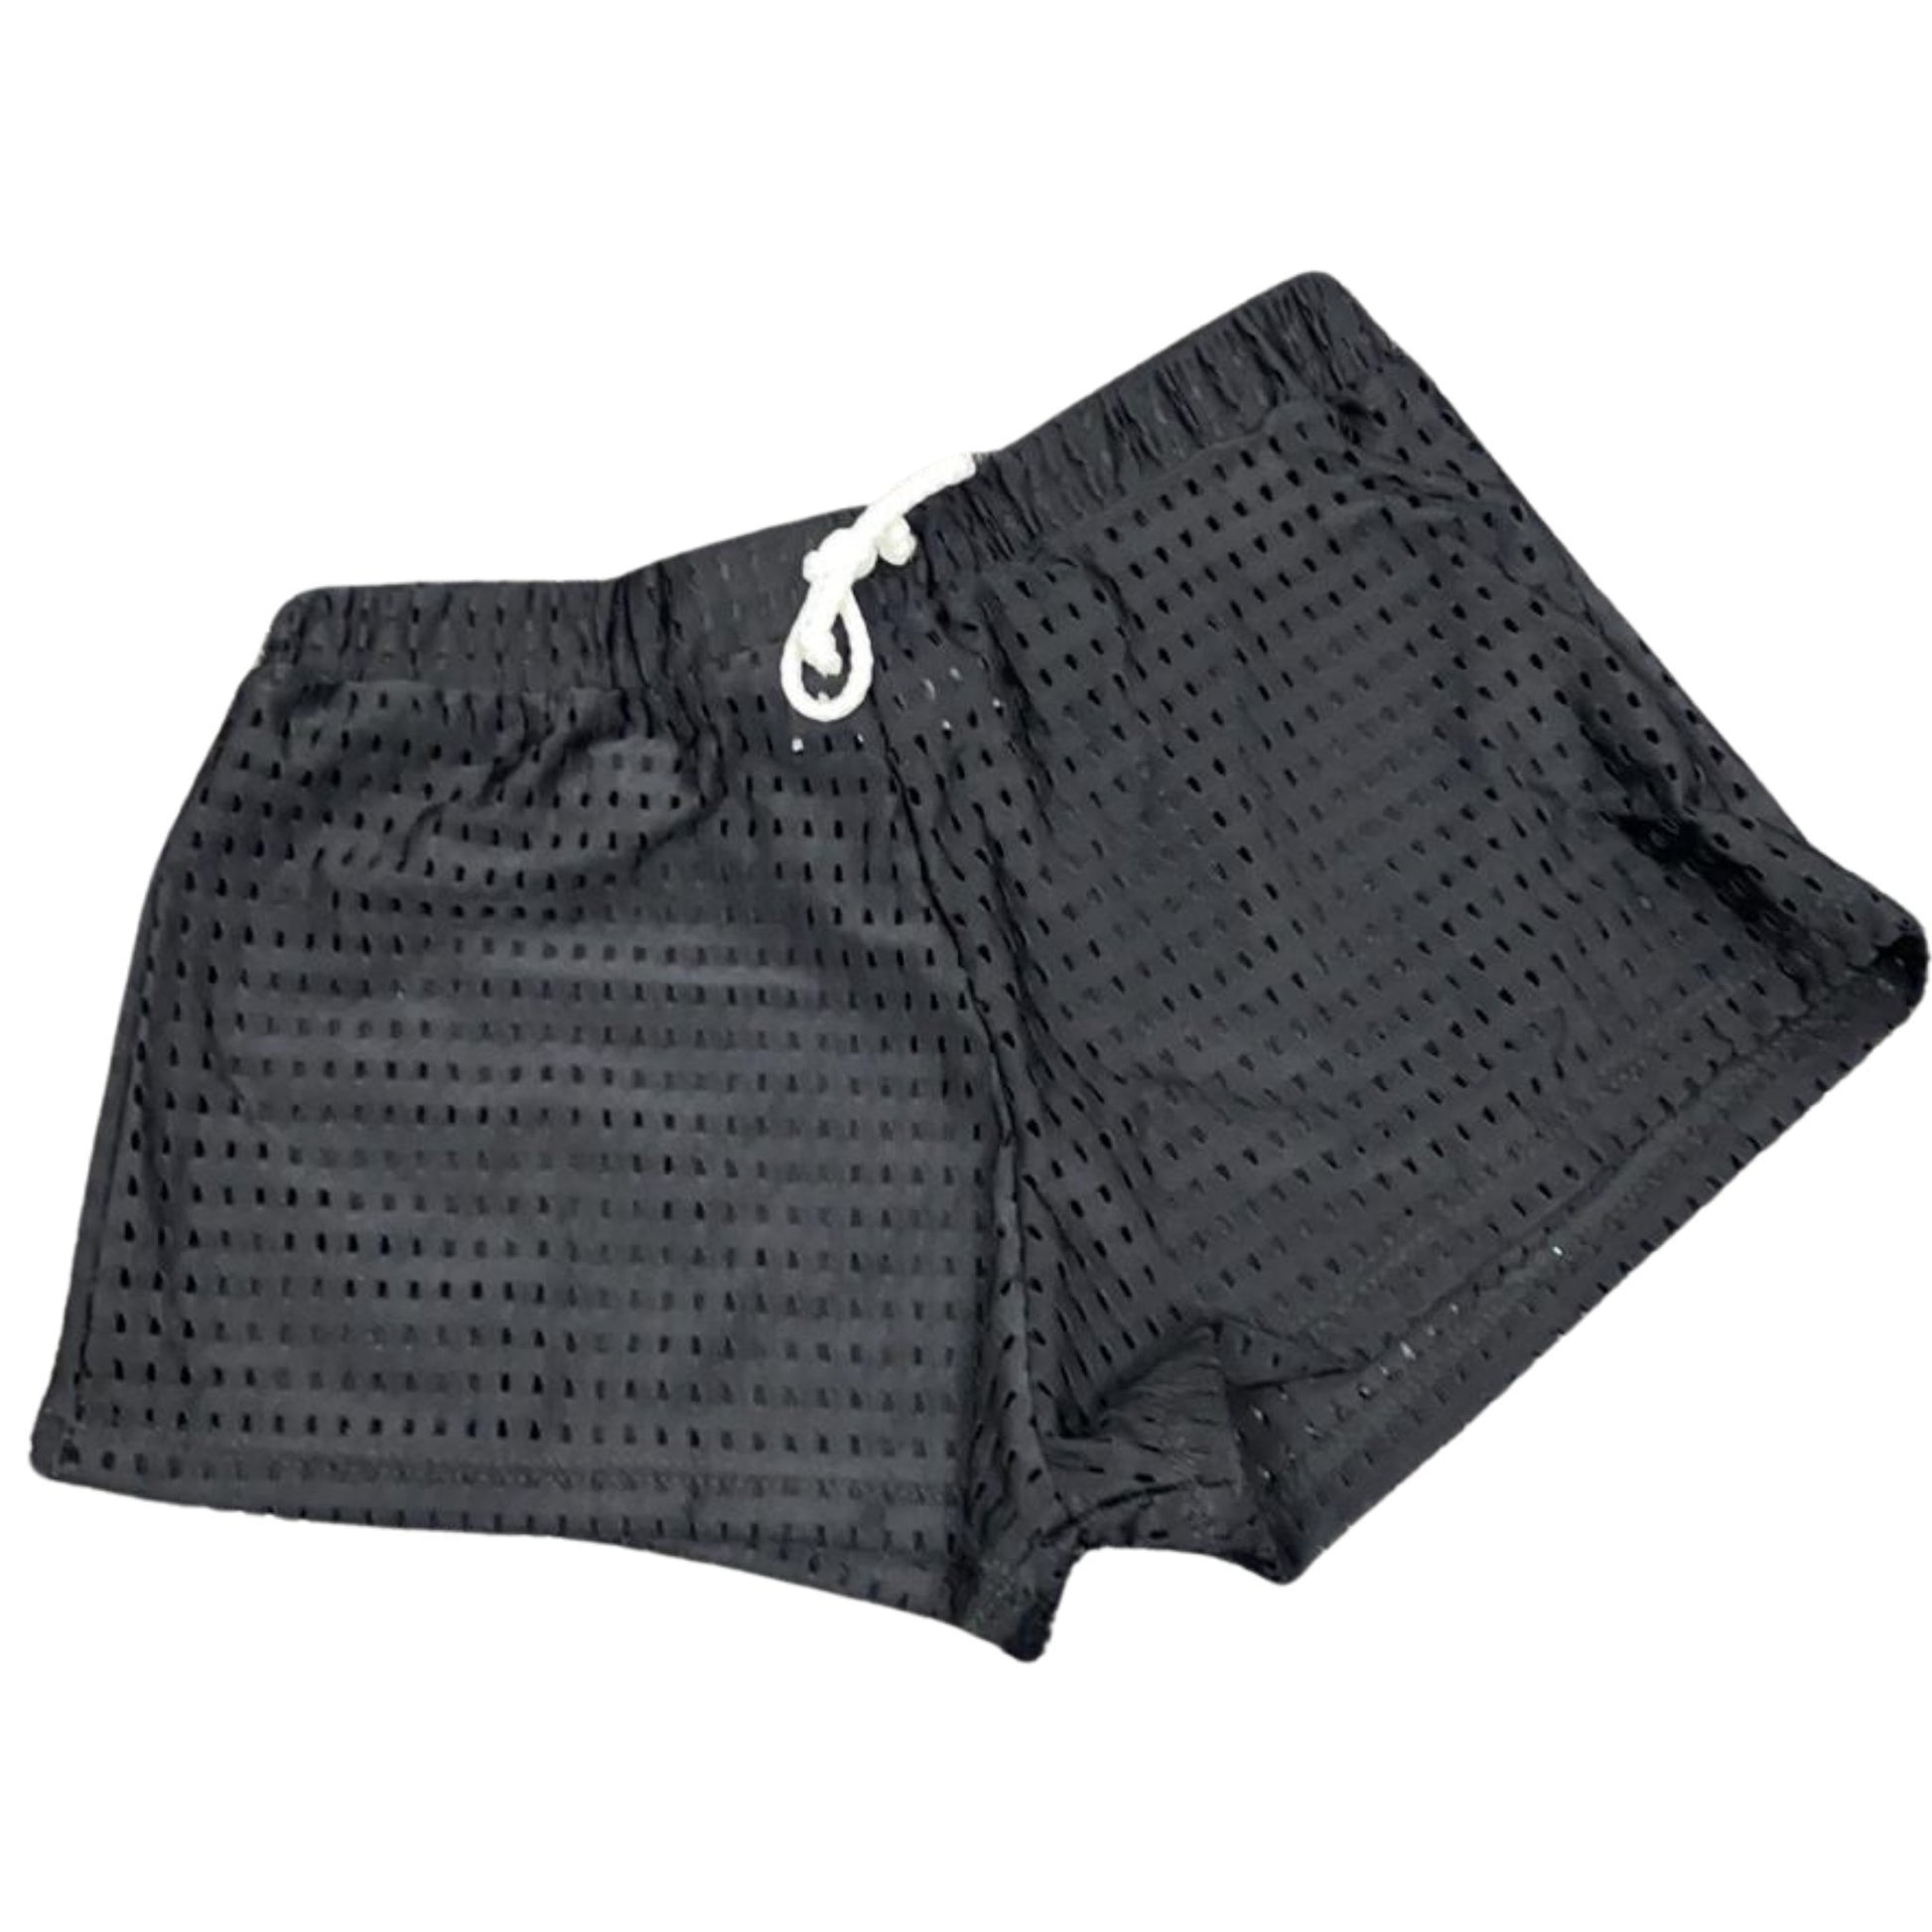 Les Tout Petits Black Mesh Short - a Spirit Animal - shorts $30-$45 black cover-ups